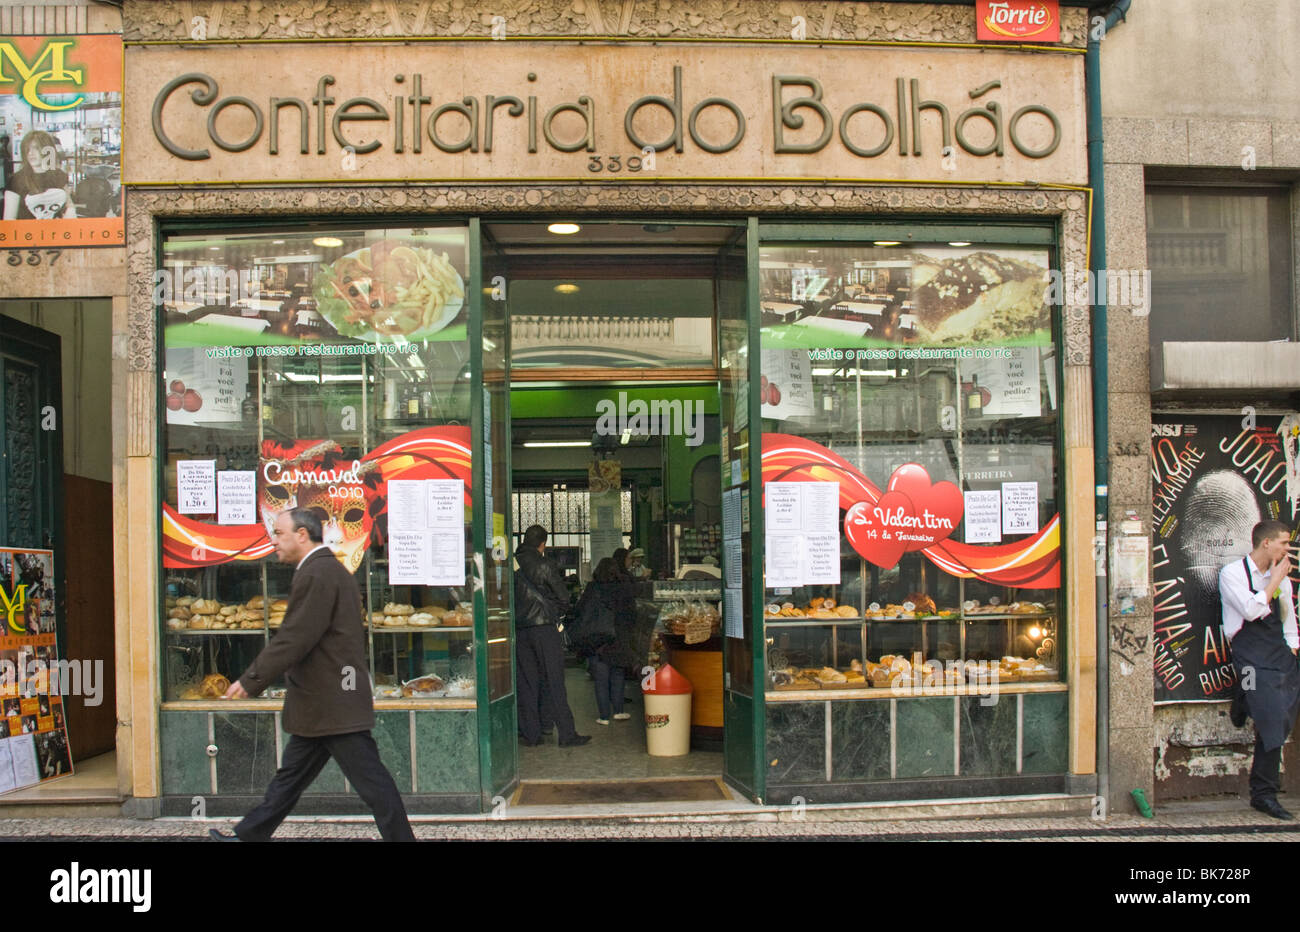 Confeitaria do Bolhão, Porto (Oporto), Portugal, Europe Stock Photo